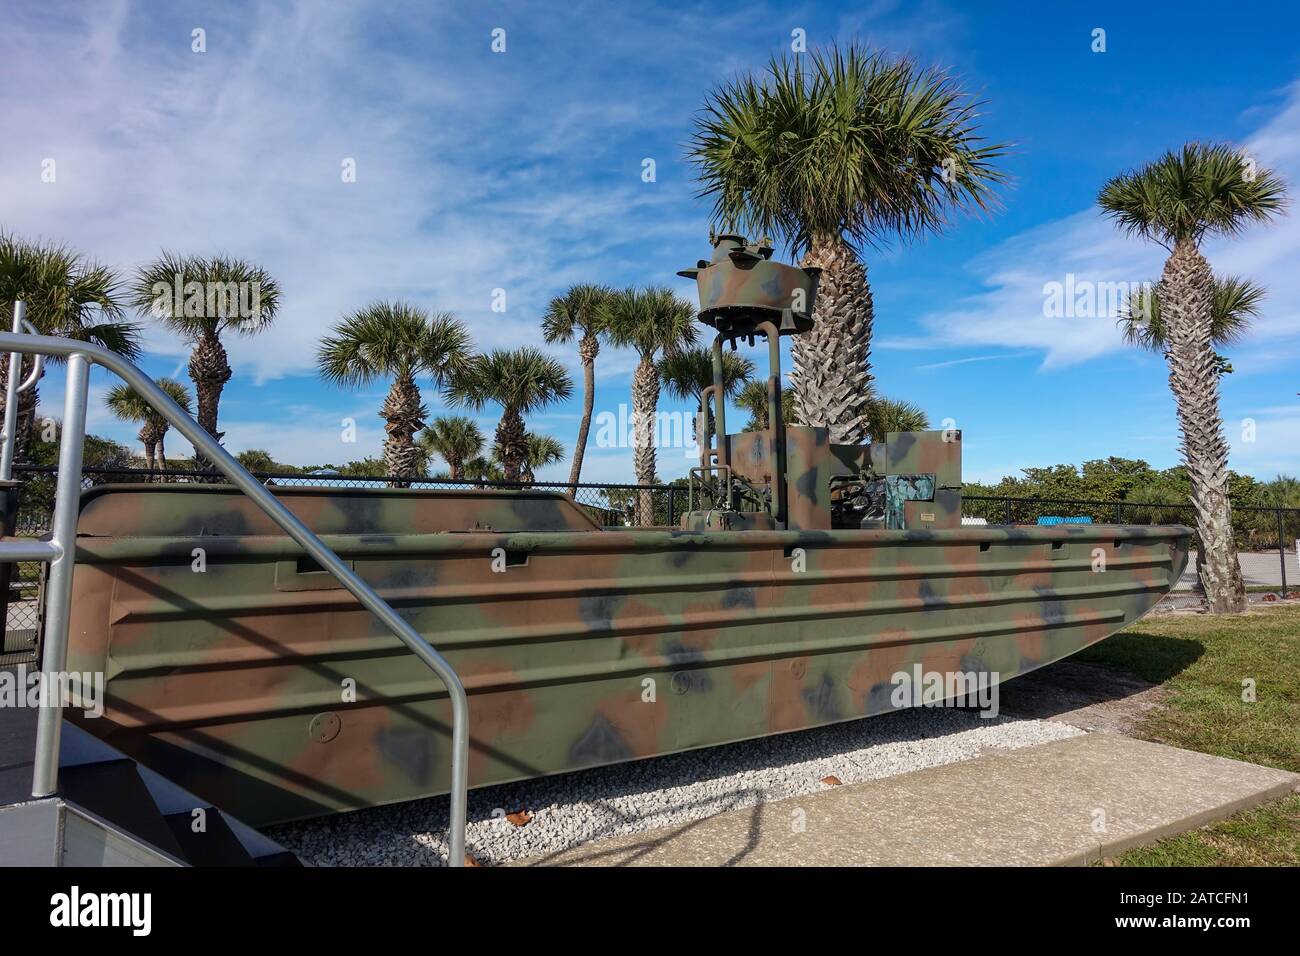 Ft. Pierce, FL/USA-1/27/20: The Riverine ist ein Short Range Special Operations Assault Craft, das per Hubschrauber transportiert und von Navy Seals im Kampf eingesetzt wird. Stockfoto